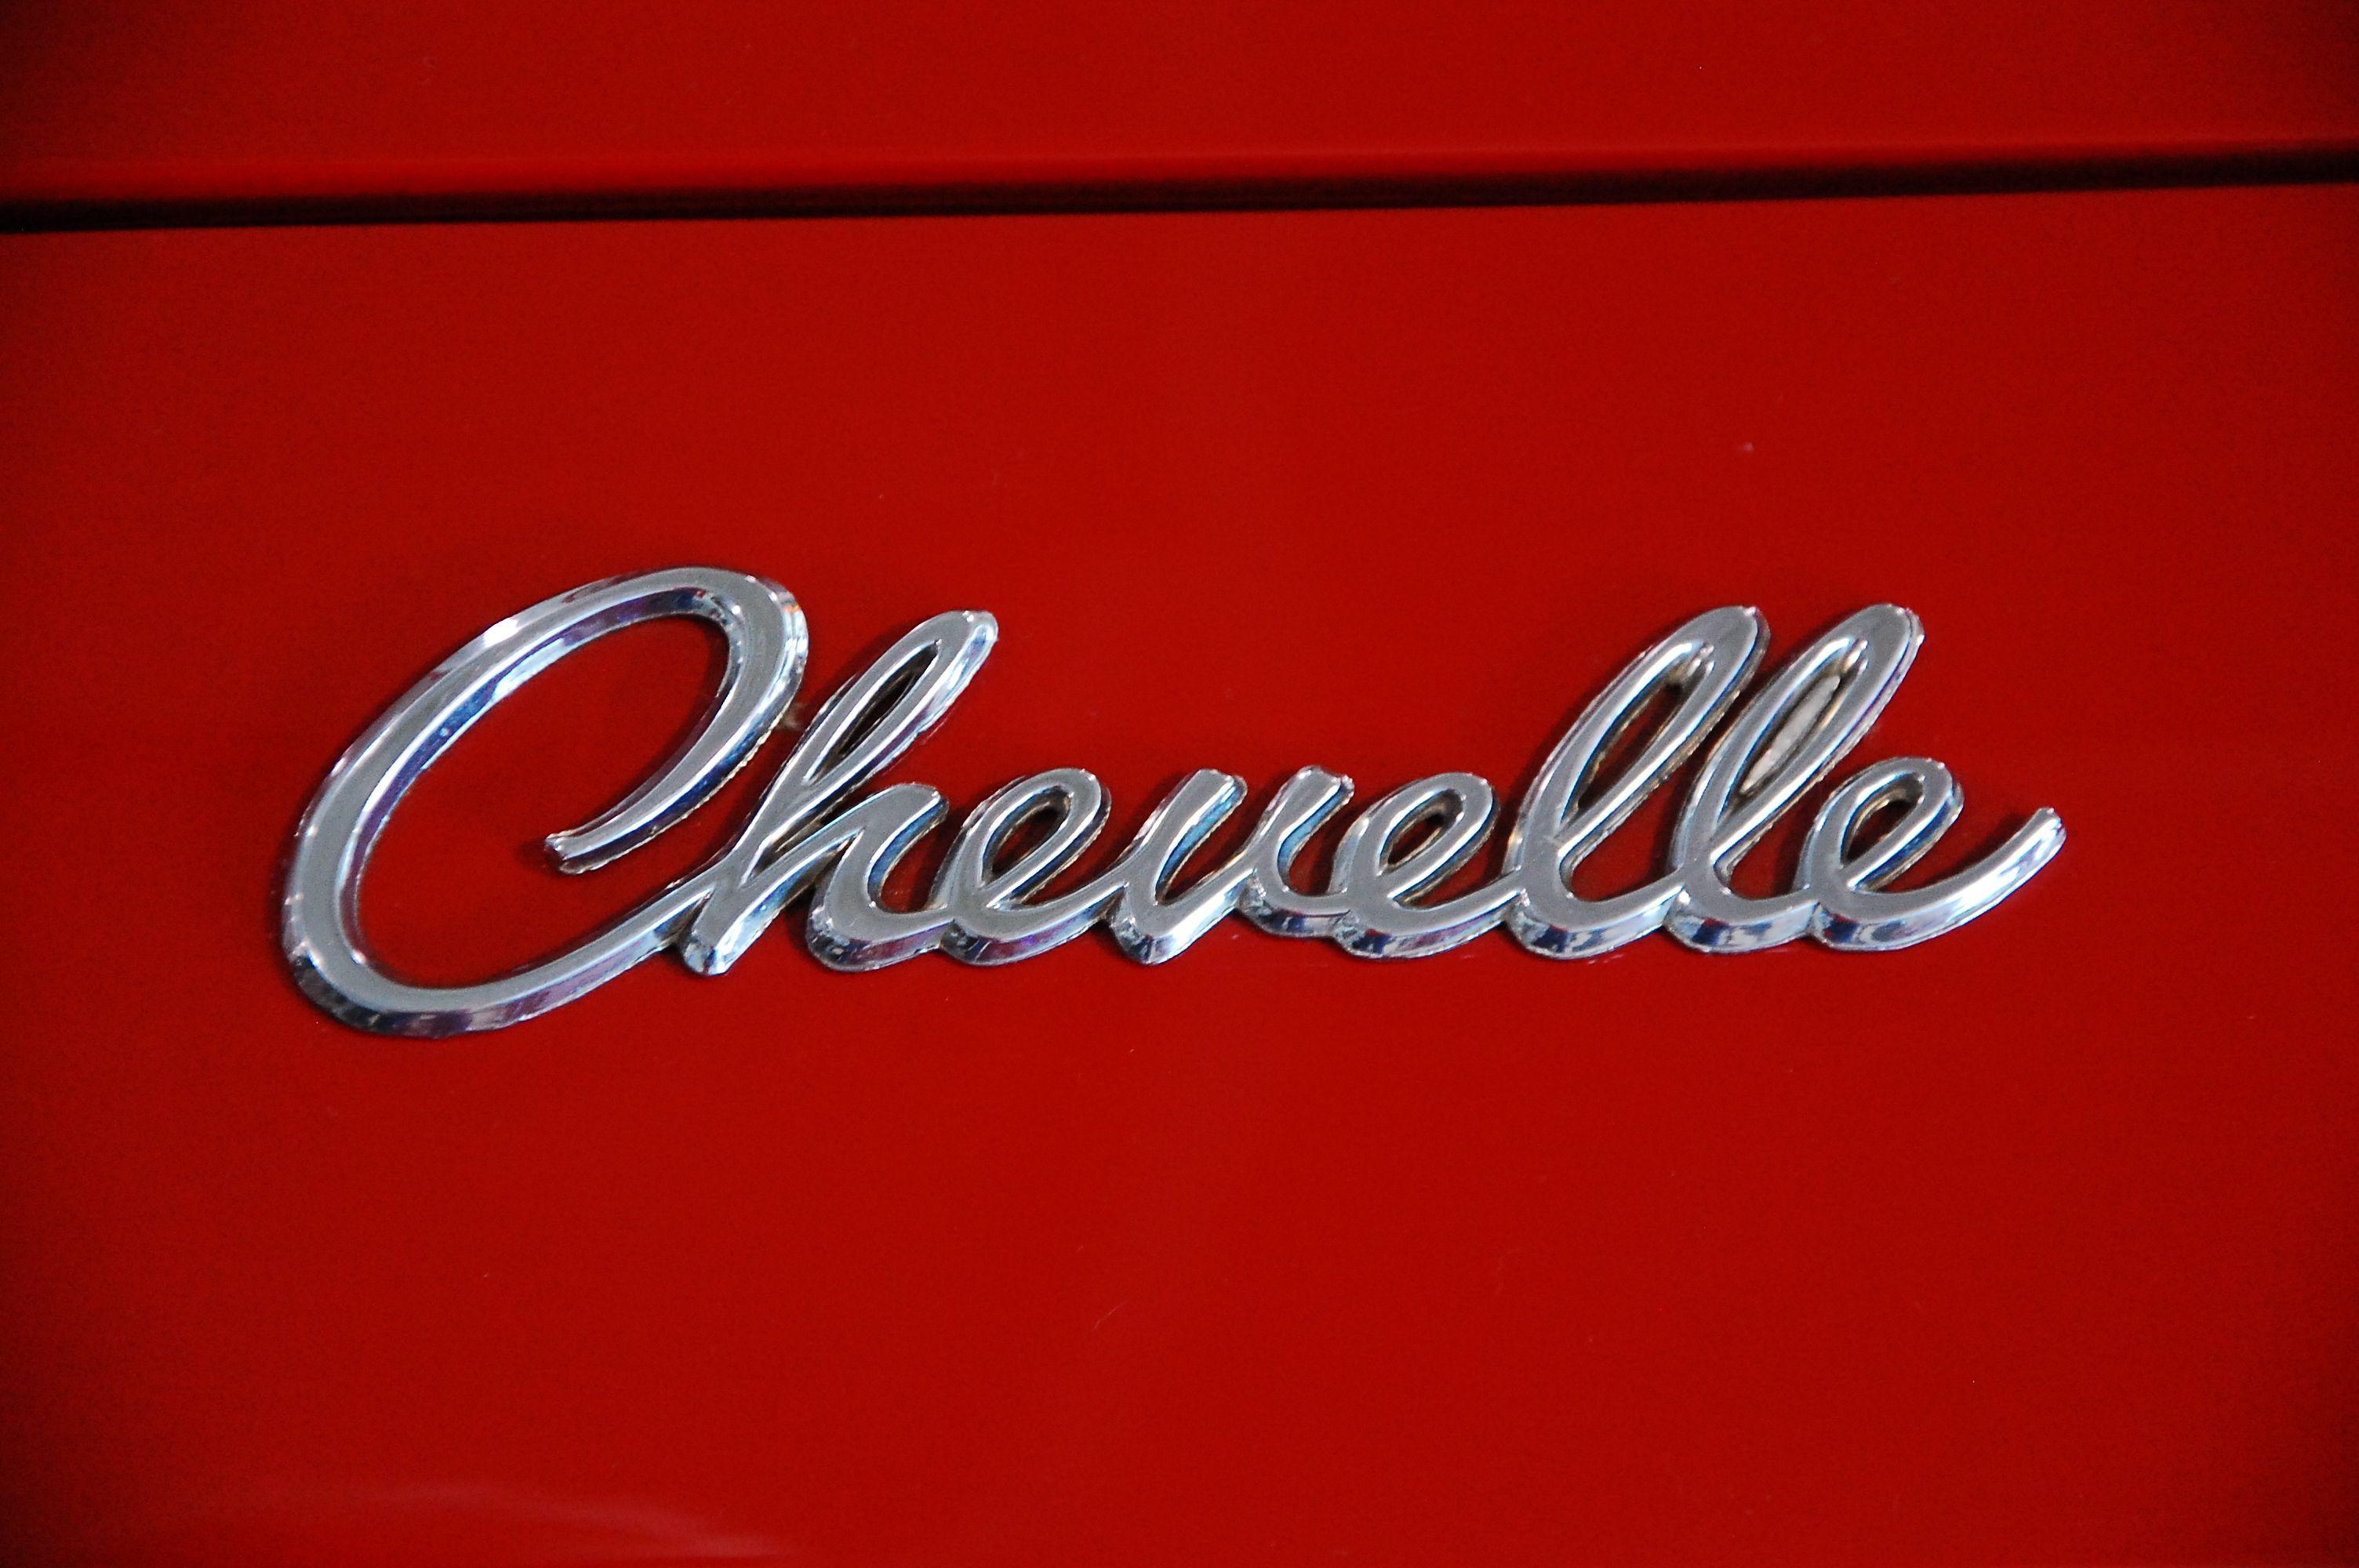 Chevelle Logo - File:Chevelle logo.jpg - Wikimedia Commons